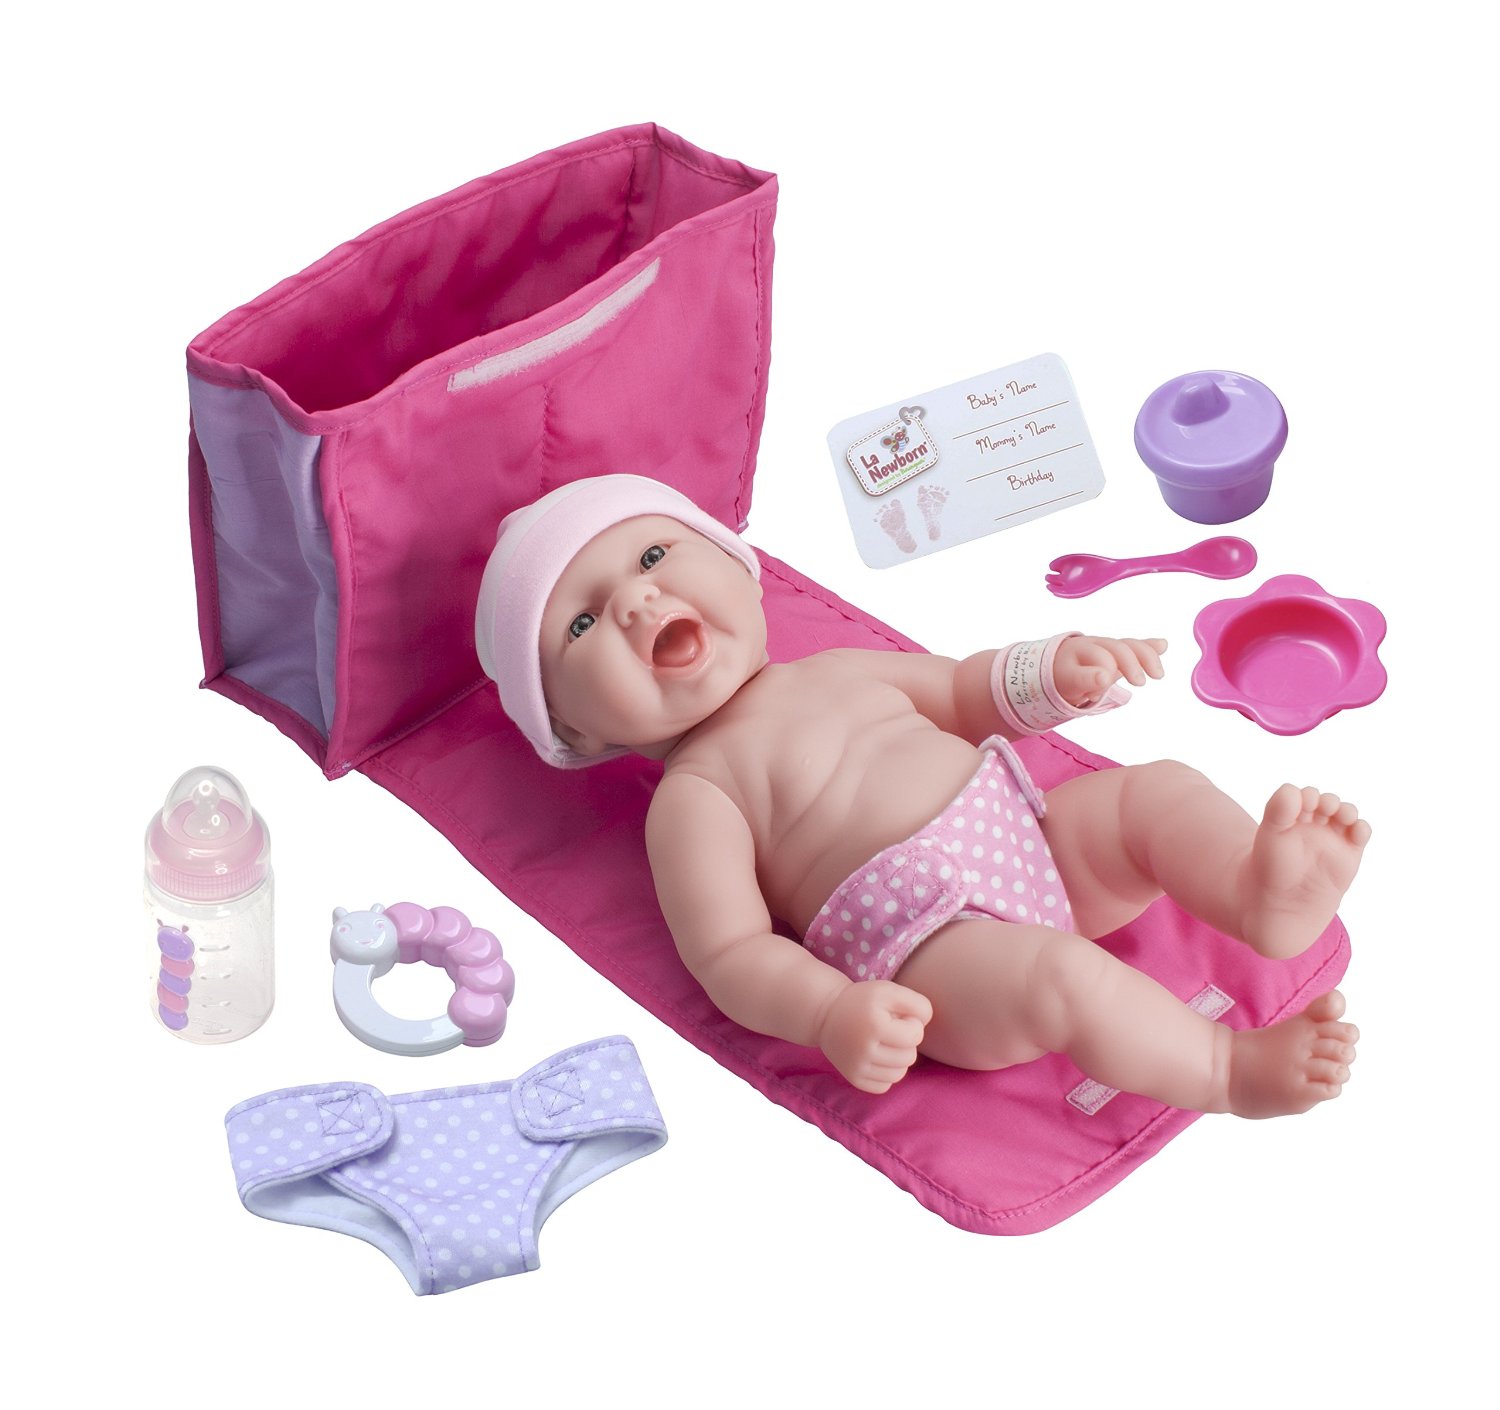 Bộ đồ chơi thực hành tắm cho búp bê nhập từ Mỹ LA NEWBORN 10 Piece Deluxe DIAPER BAG GIFT SET